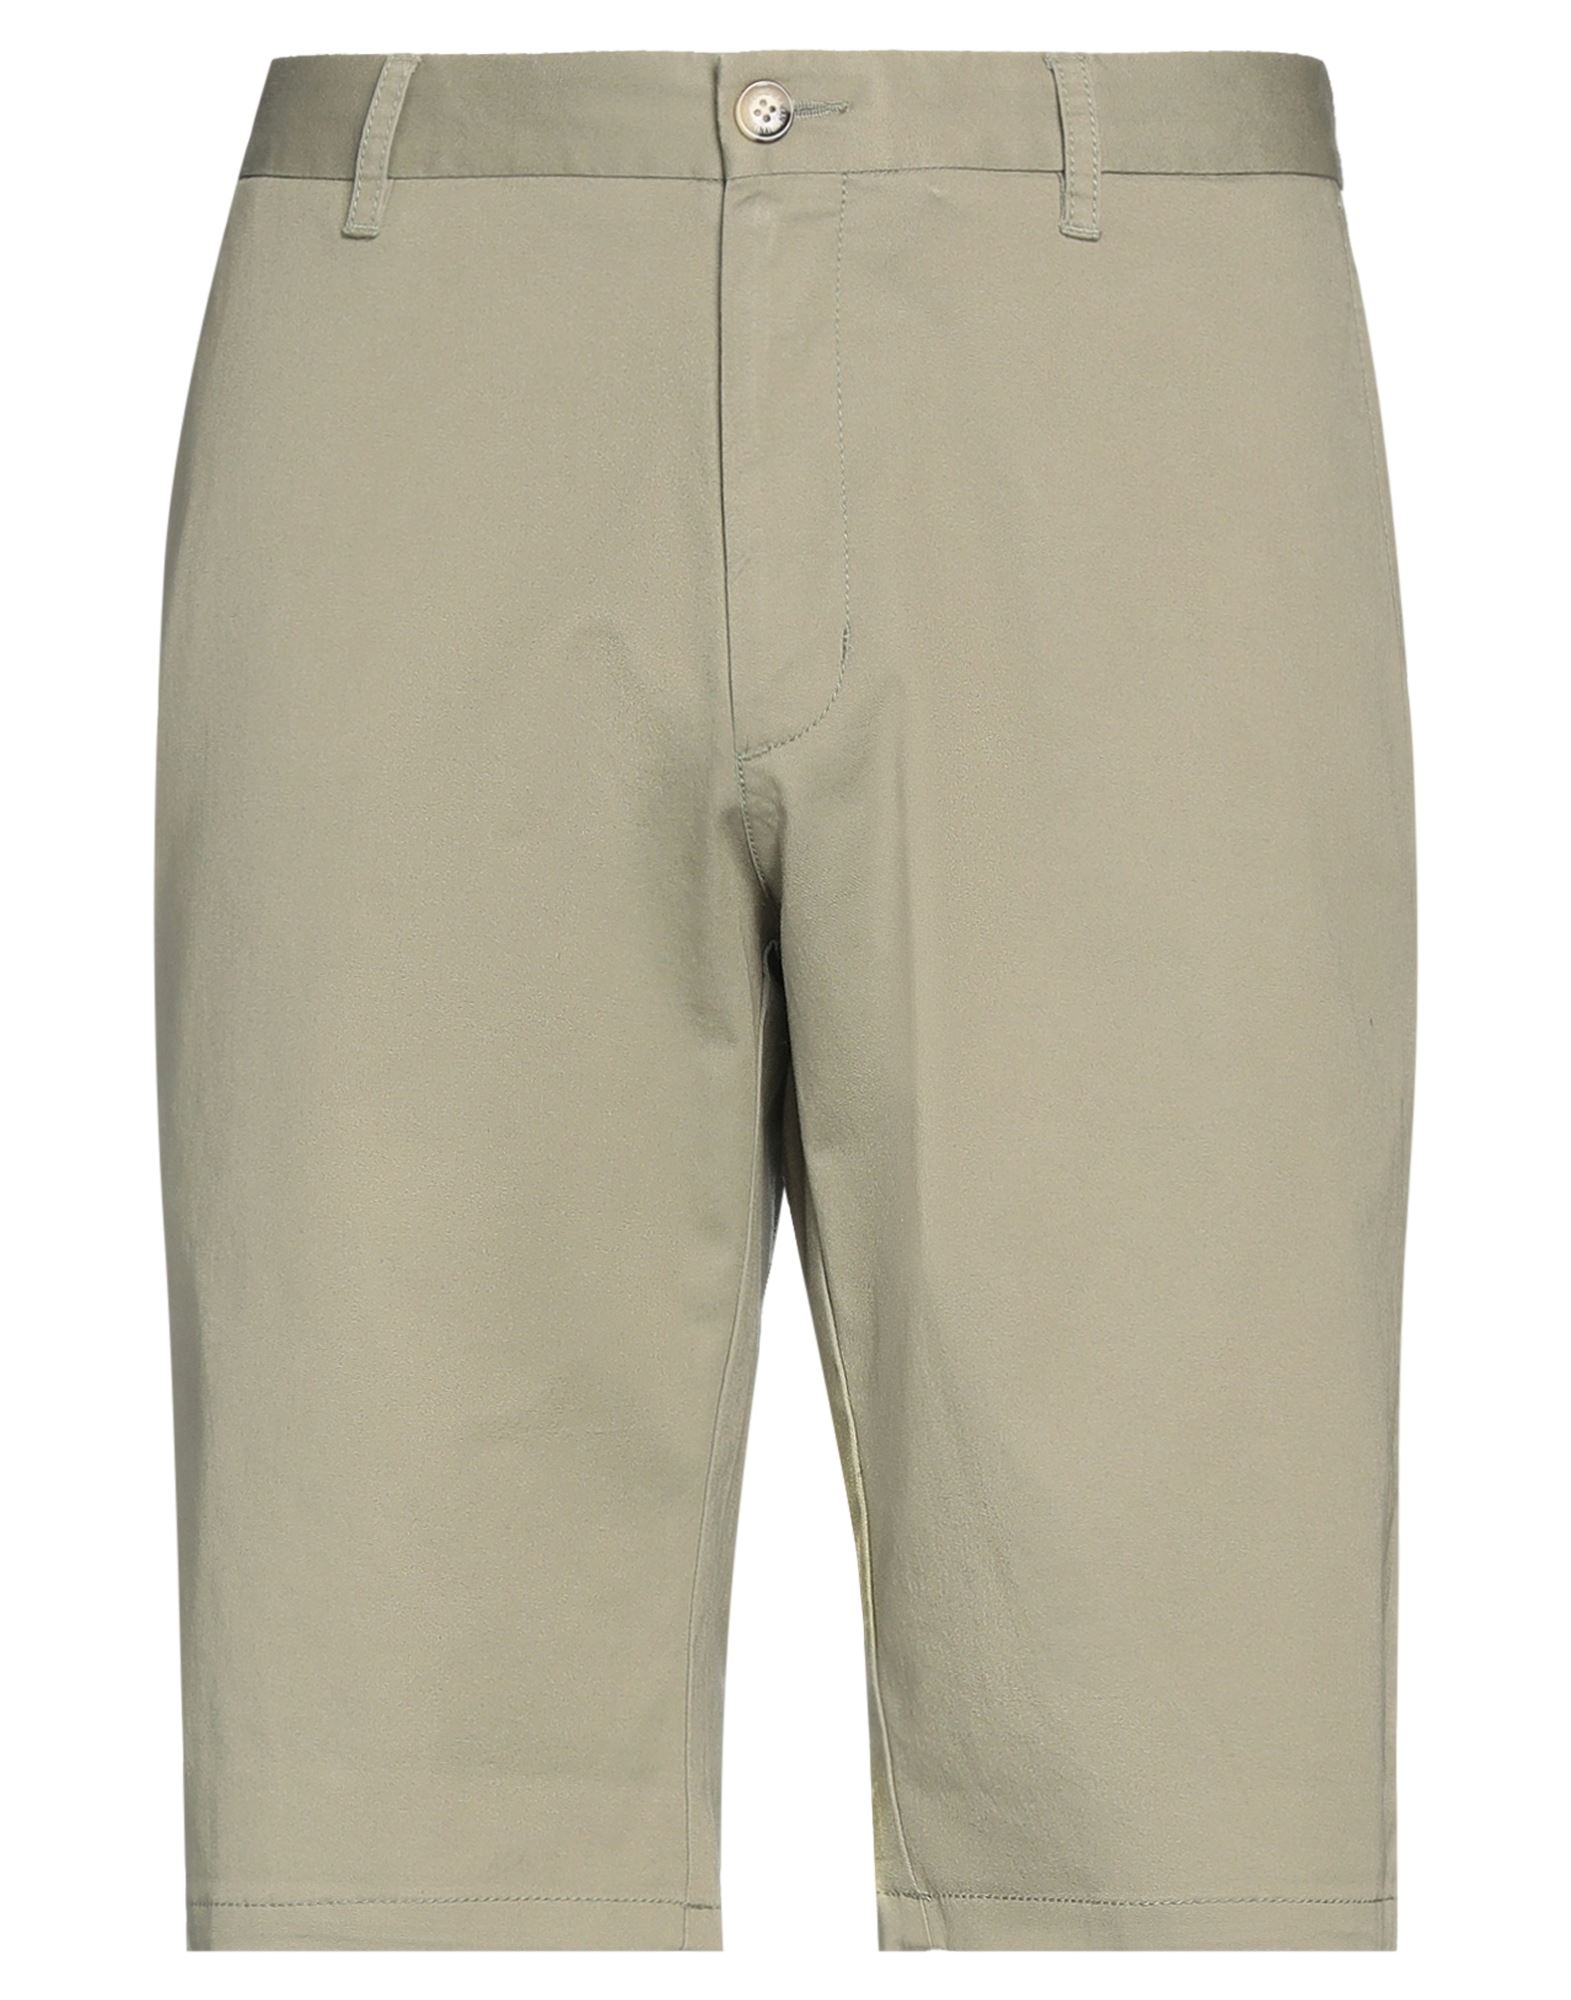 Ben Sherman Man Shorts & Bermuda Shorts Sage Green Size 34 Cotton, Elastane